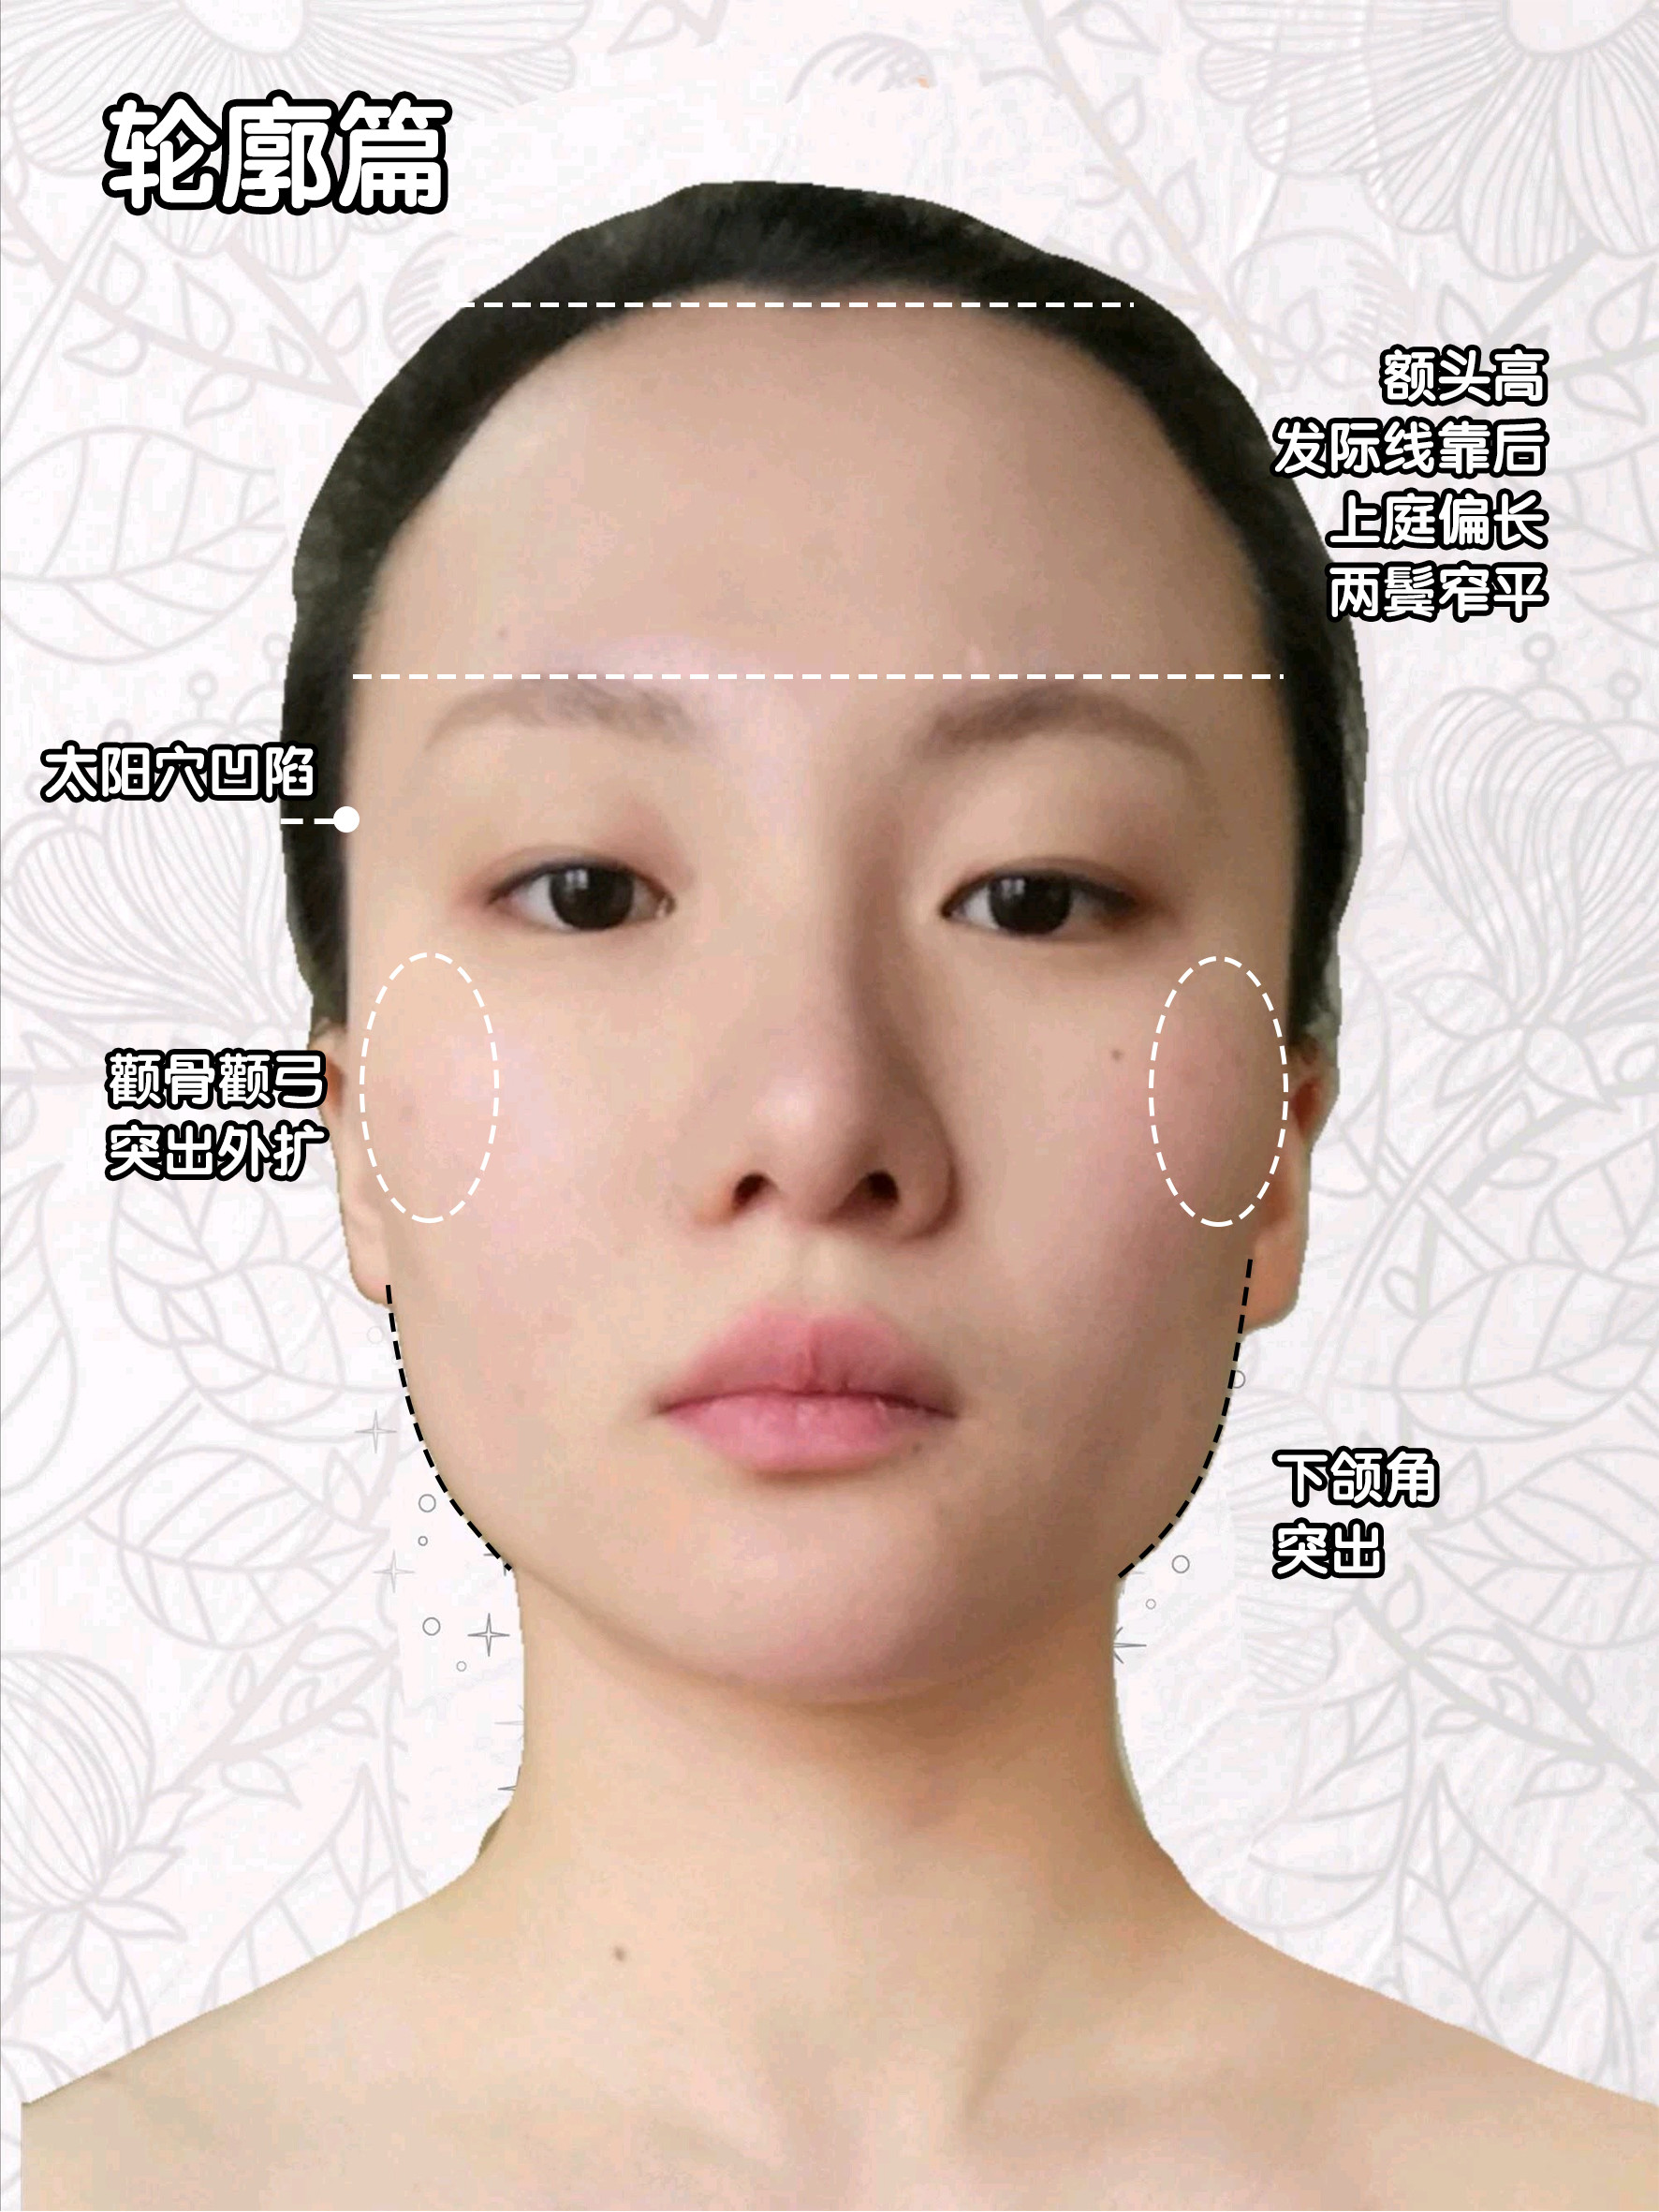 脸部化妆素描系列之五_上海柯模思化妆学校